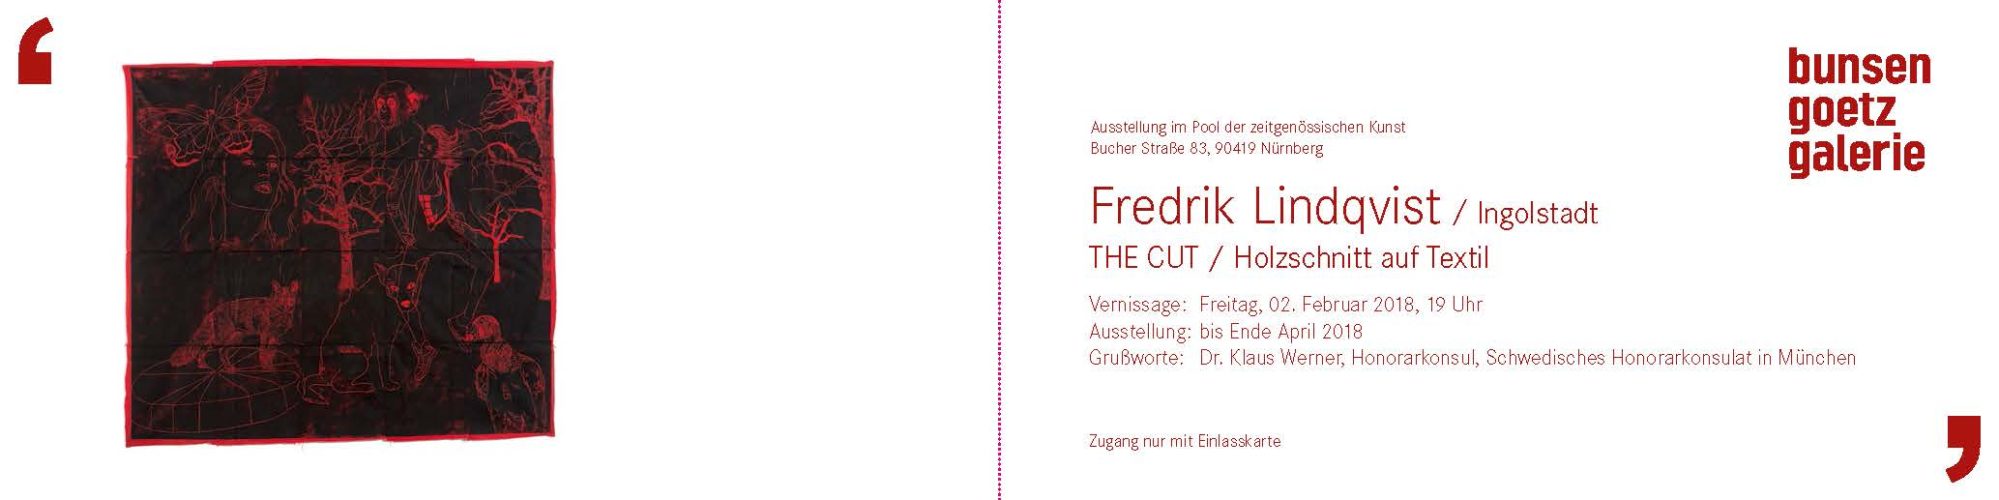 Fredrik Lindquist / The cut / 2018